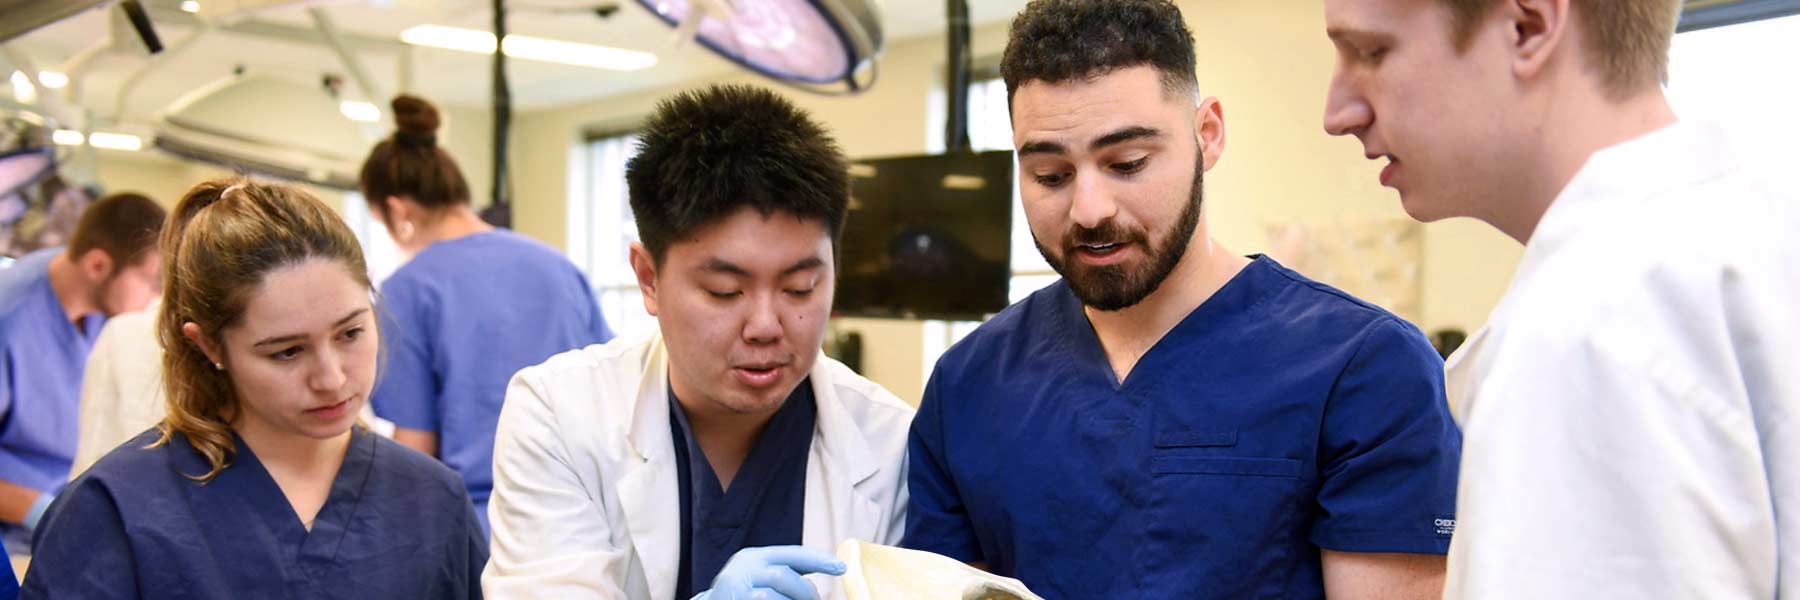 anatomy students examine a pelvic bone